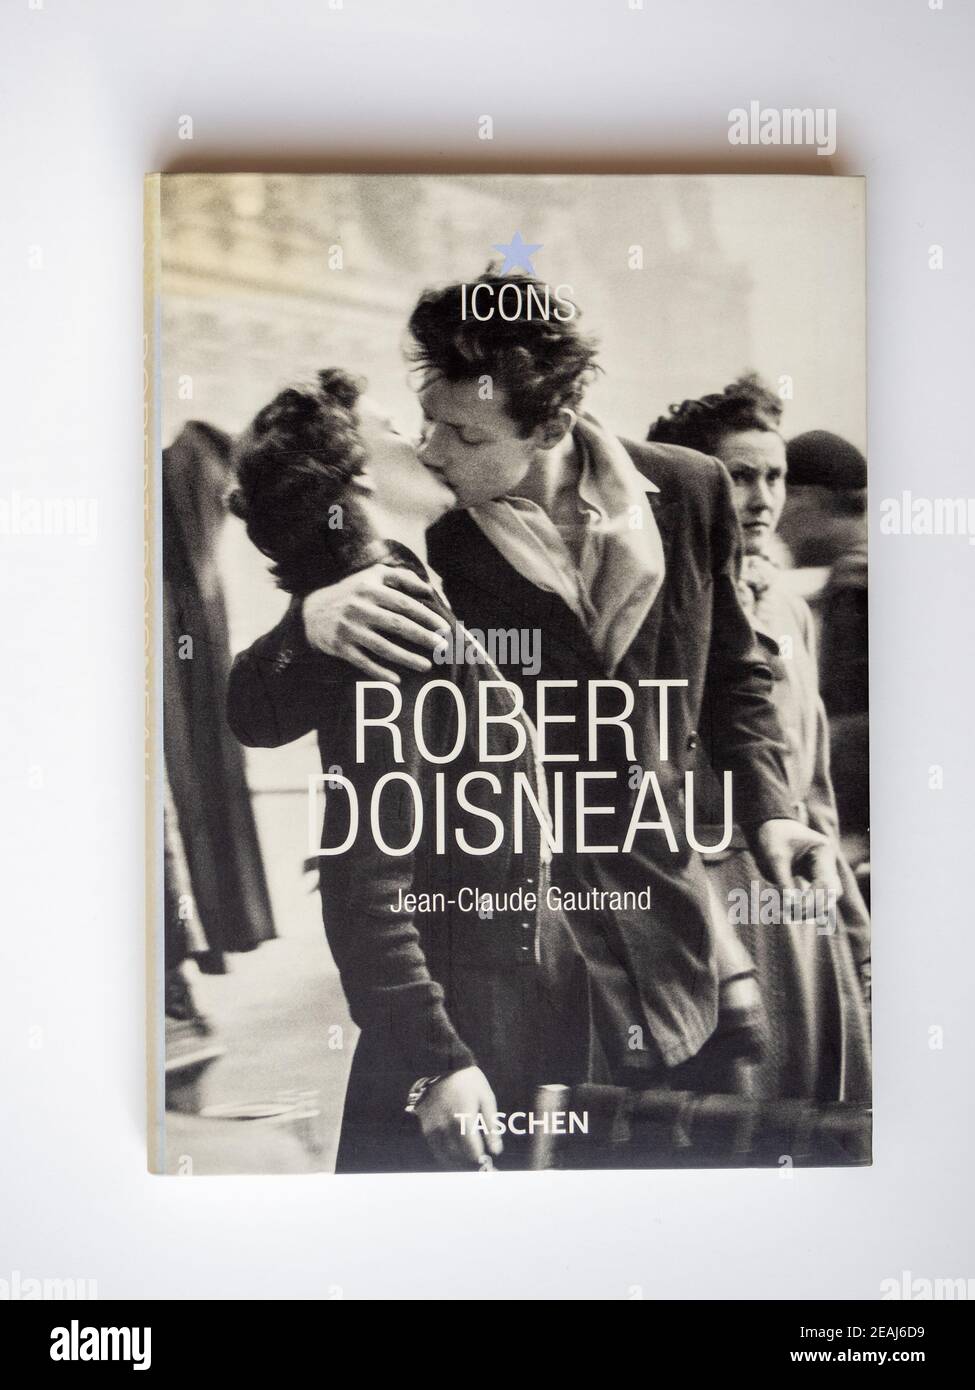 Stockfoto eines Taschenbuch über den Fotografen Robert Doisneau von Jean Claude Gautrand, veröffentlicht 2003 bei Taschen in ihrer Icons-Serie. Stockfoto